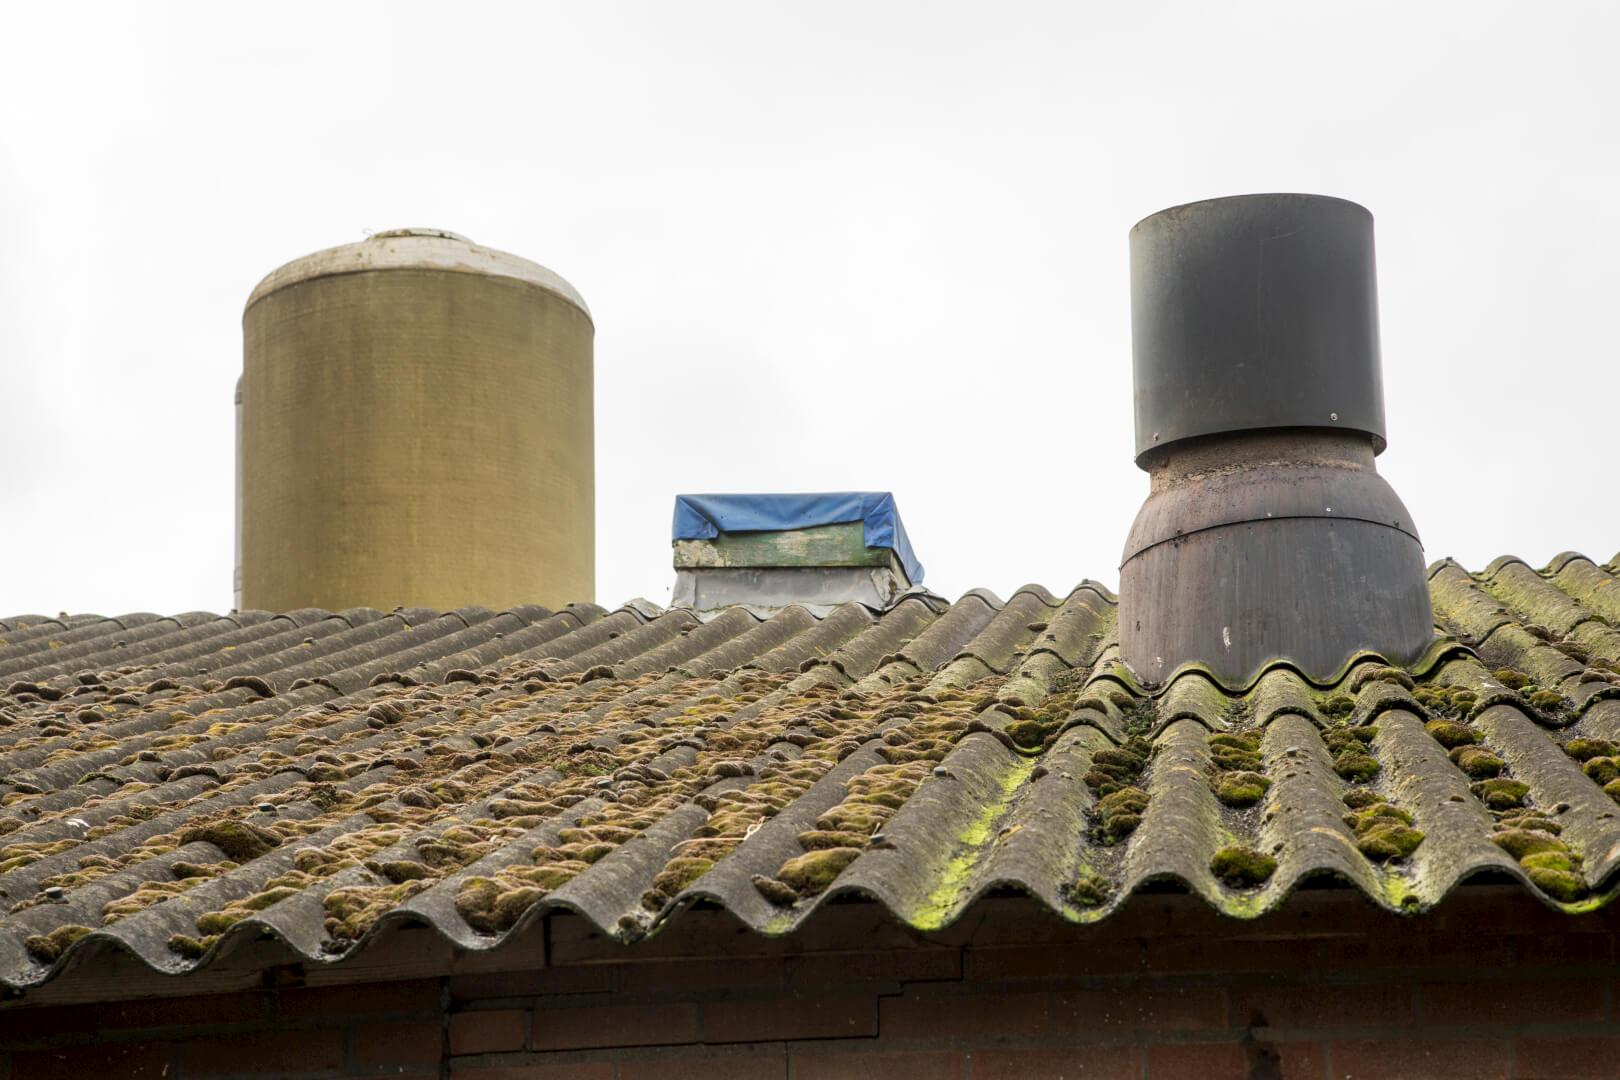 De dakplaten van asbest liggen er nu nog op. Maar binnenkort gaat het dak eraf en komen er golfplaten en zonnepanelen voor terug. 